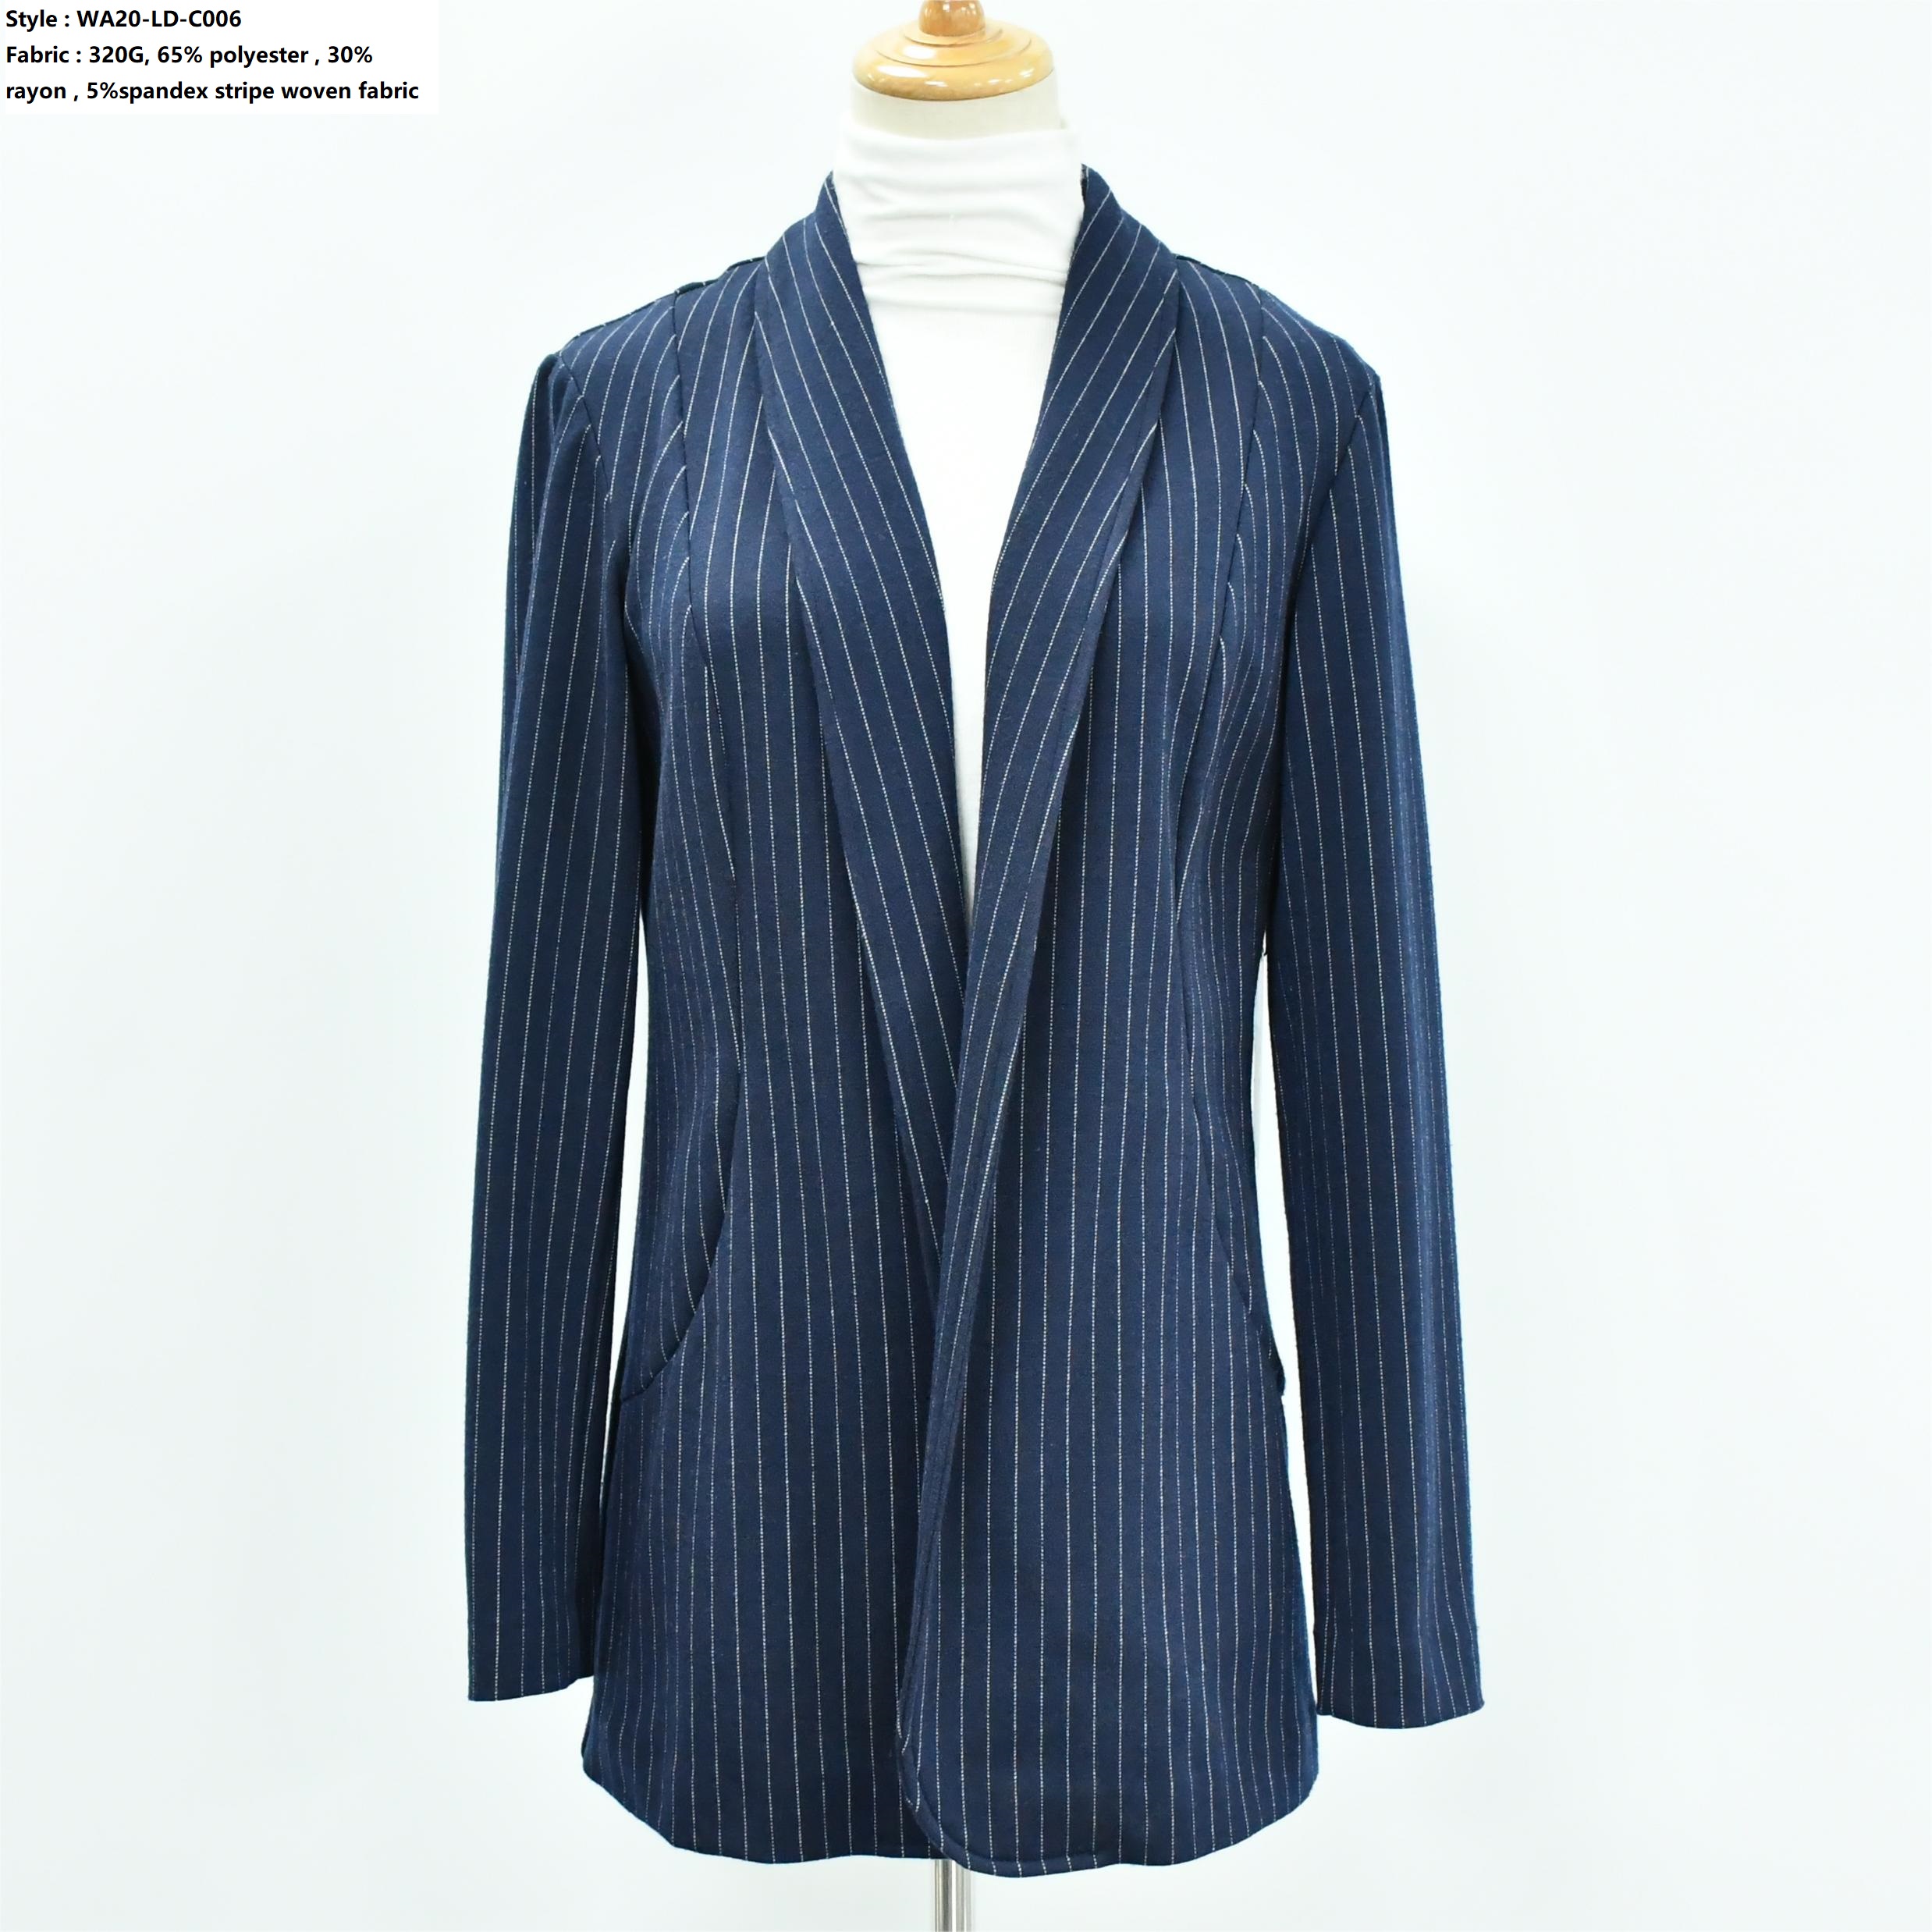 Women’s Stripe Woven Suit